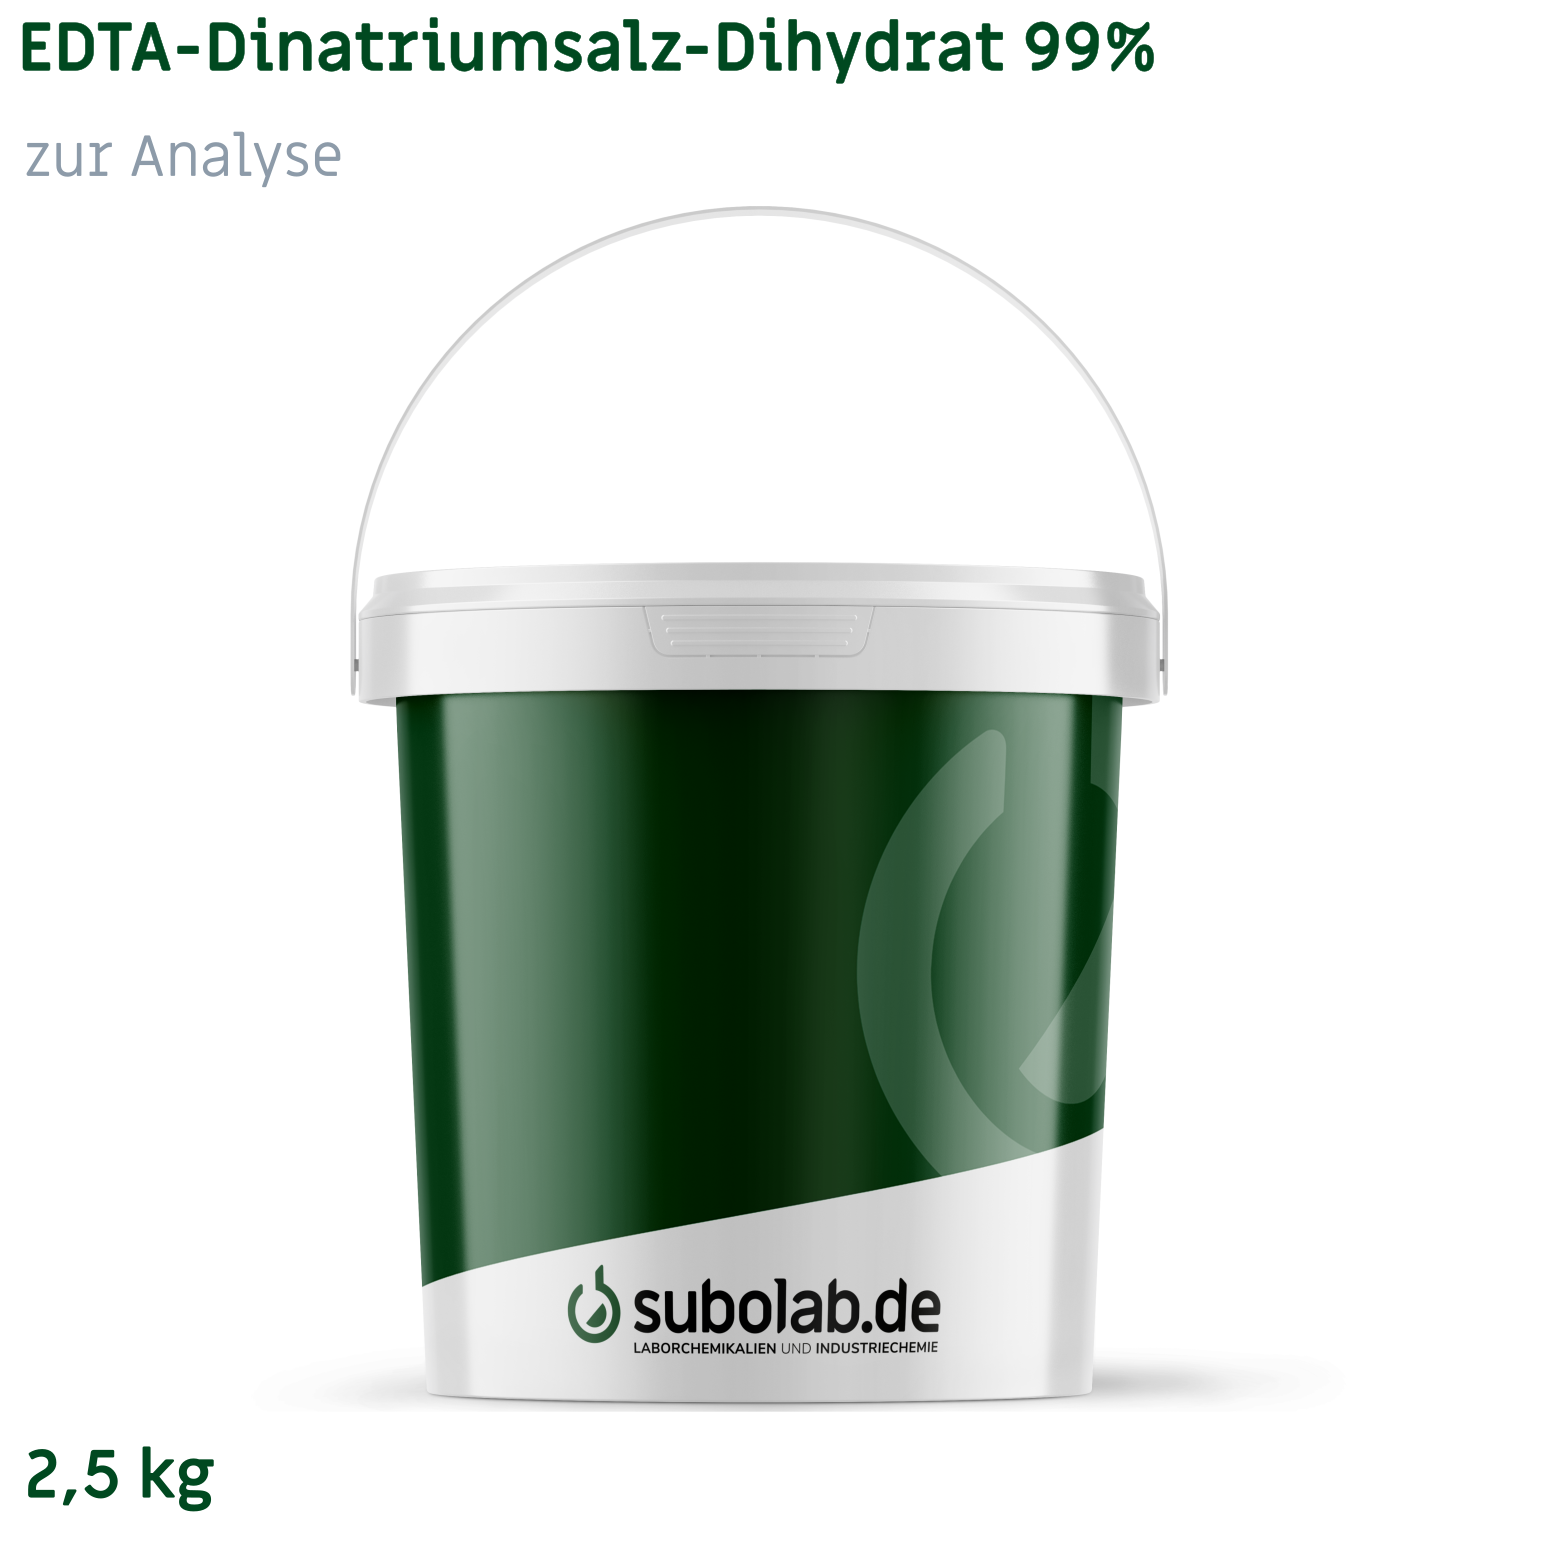 Bild von EDTA - Dinatriumsalz - Dihydrat 99% zur Analyse (2,5 kg)